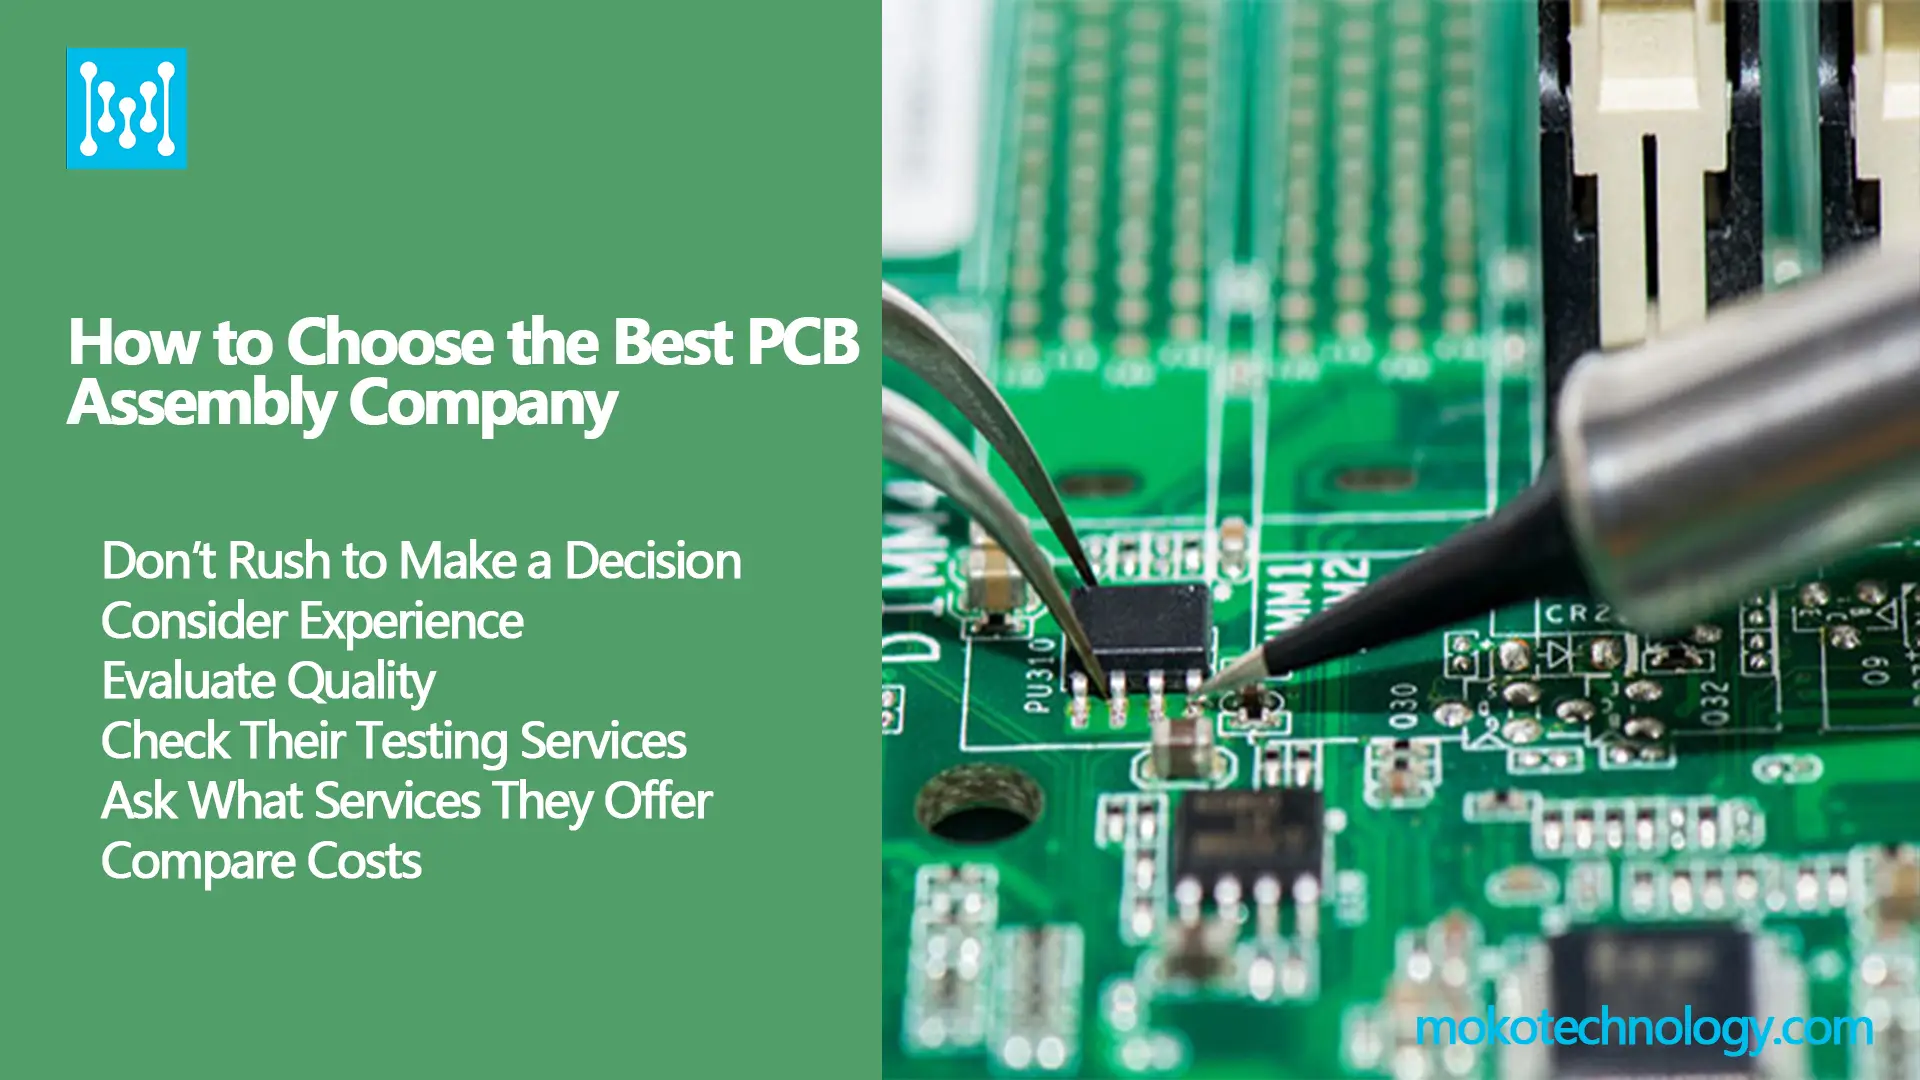 Bix elegir le utsil empresa ensamblaje PCB